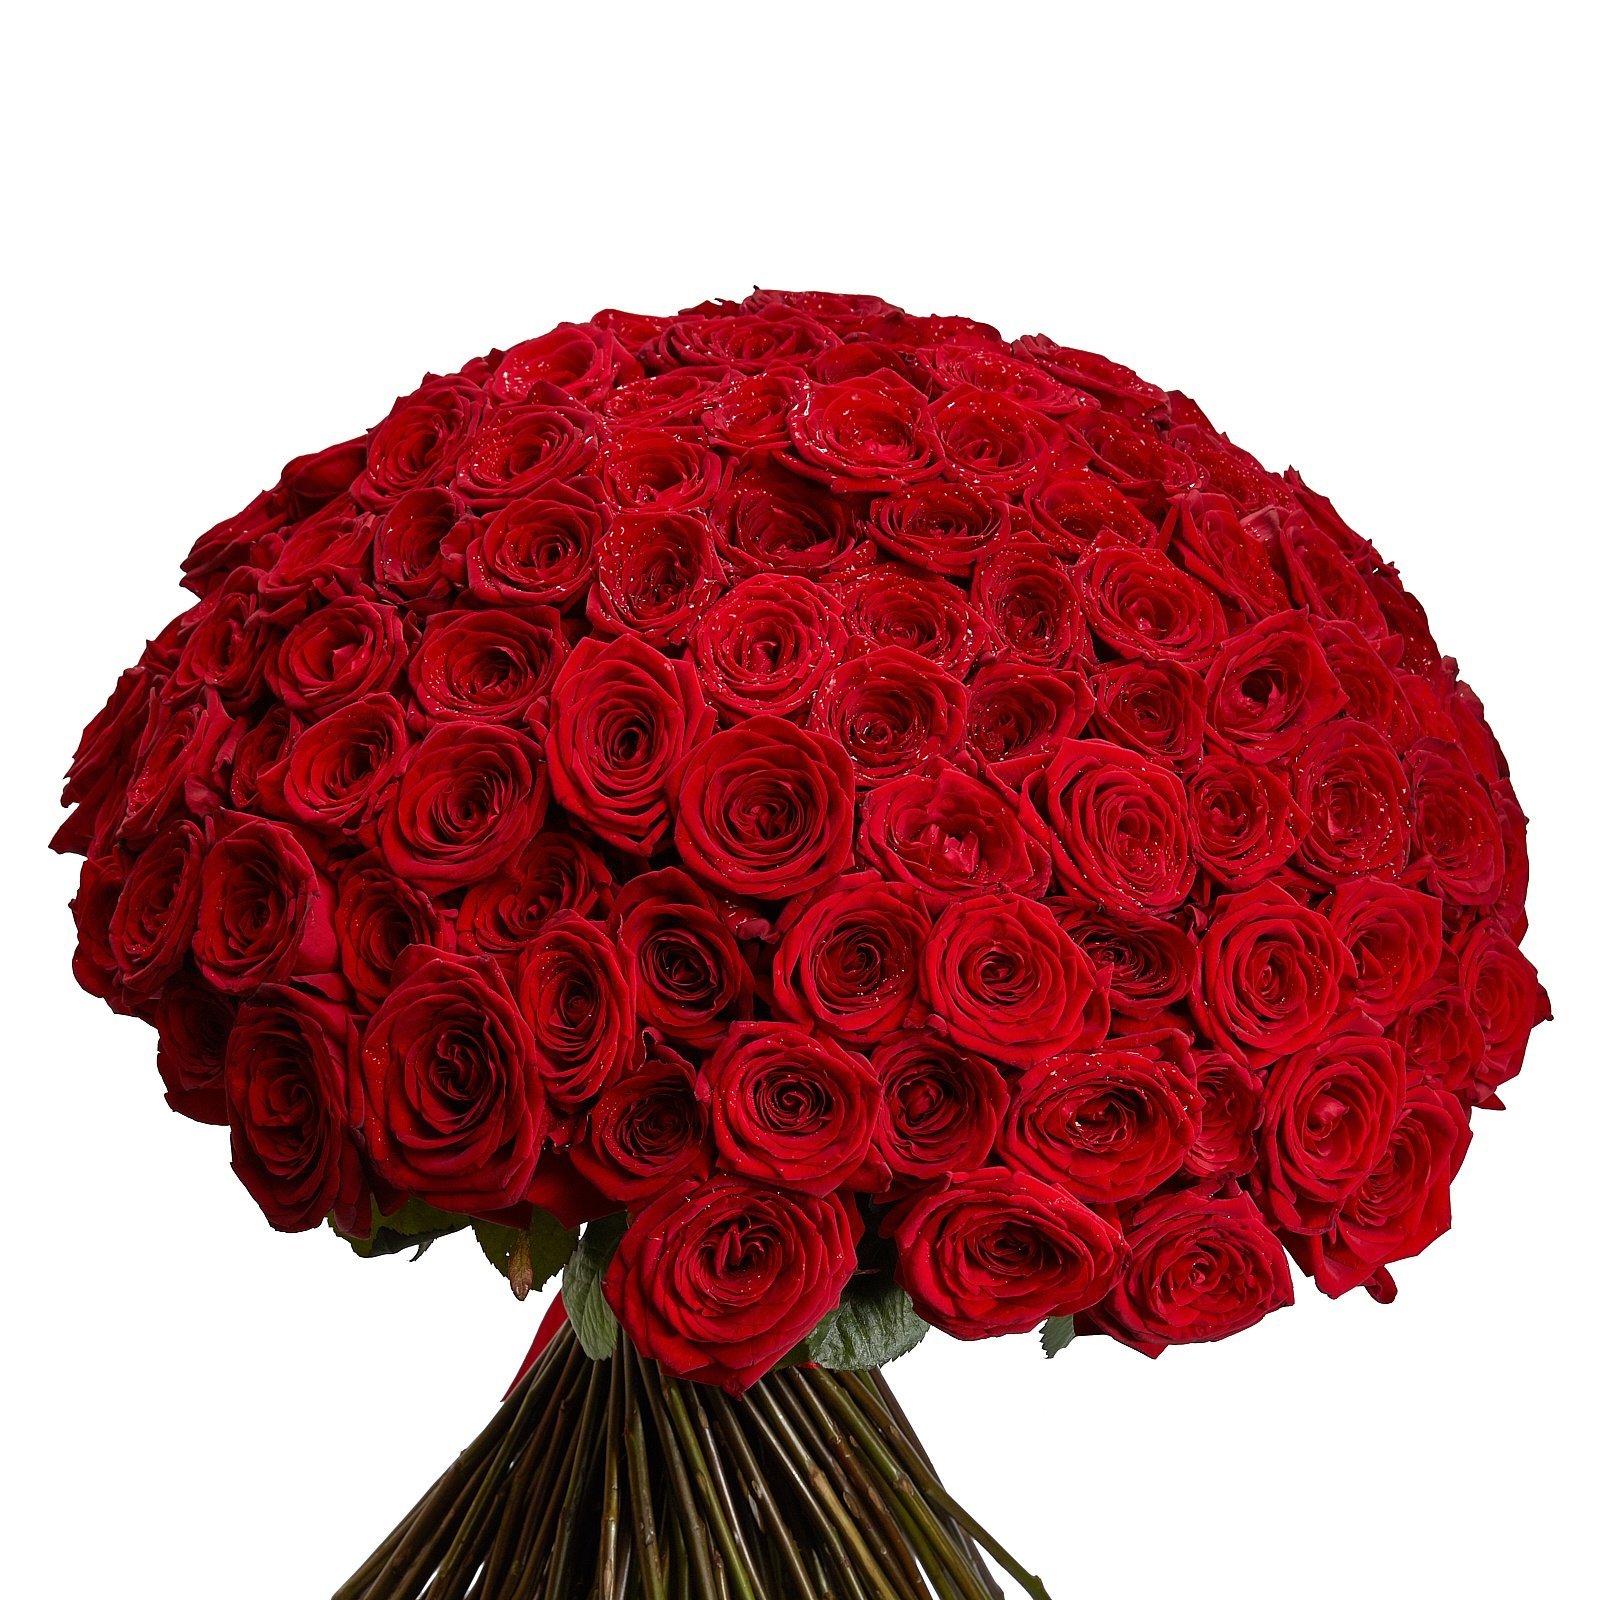 В букете было красных роз. Букет красных роз. Шикарный букет красных роз. Букет роз огромный. Огромный букет красных роз.